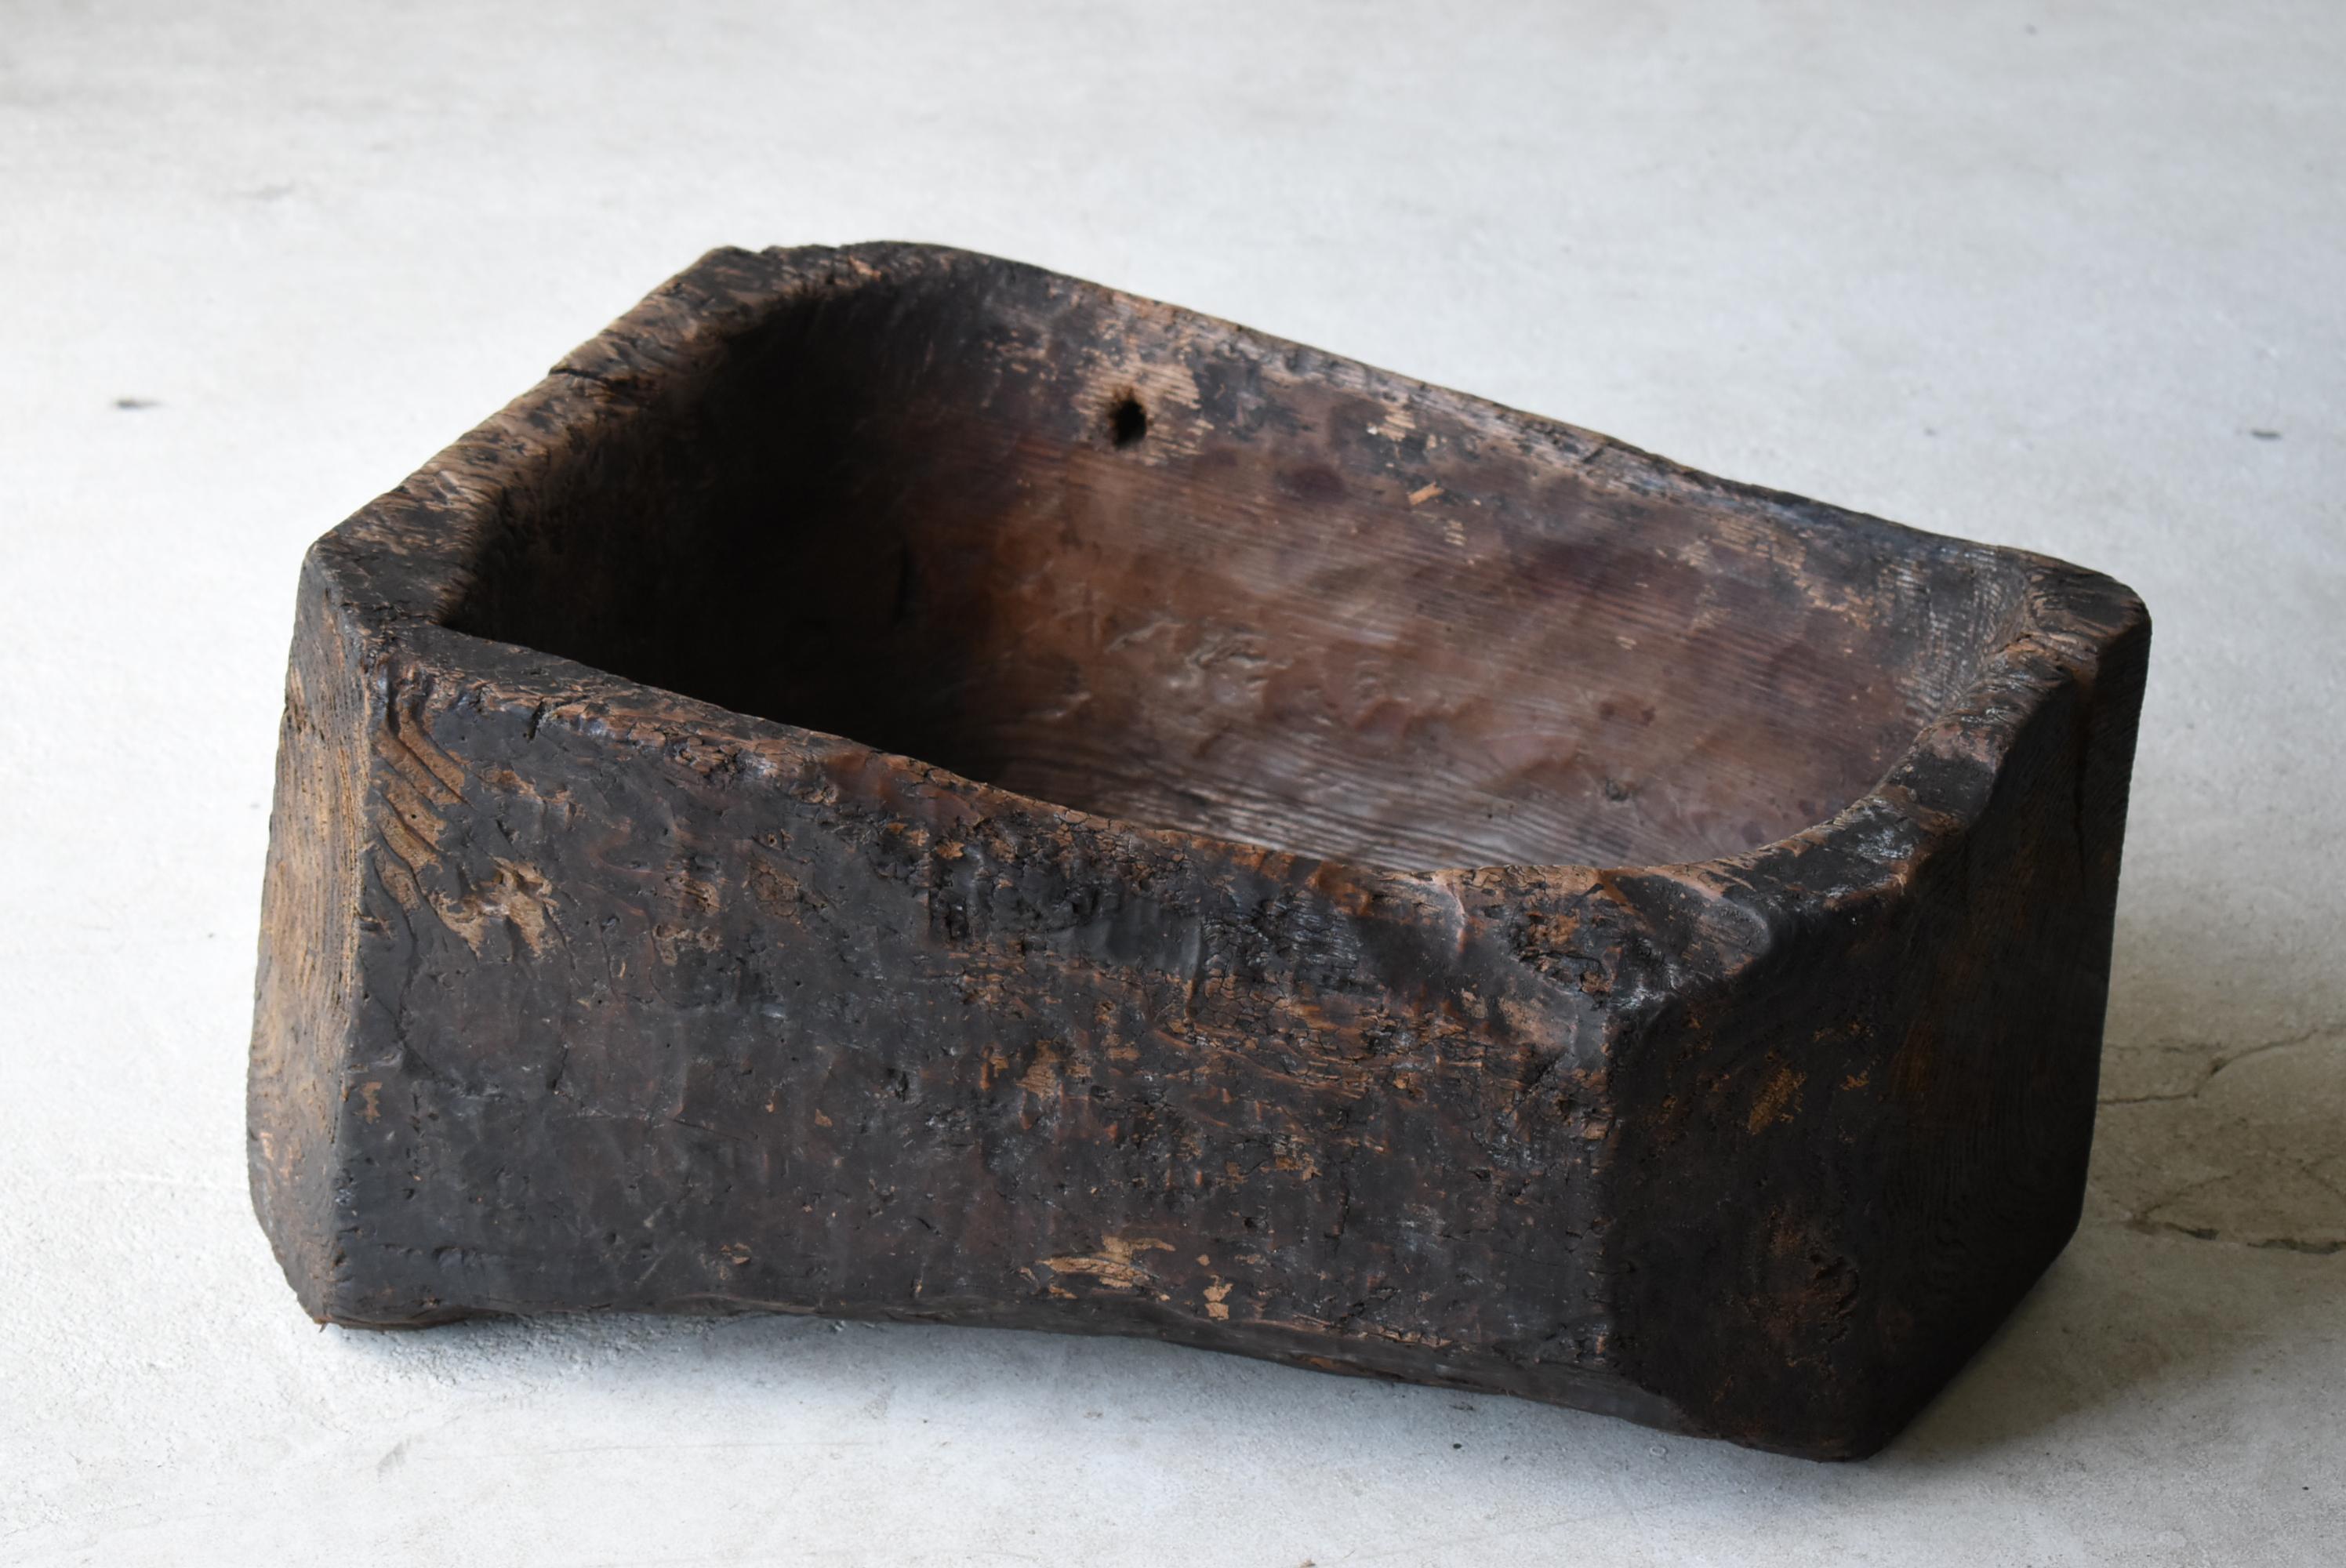 Japanese Antique Primitive Wooden Bowl 1860s-1900s / Wabi Sabi Object Mingei 1